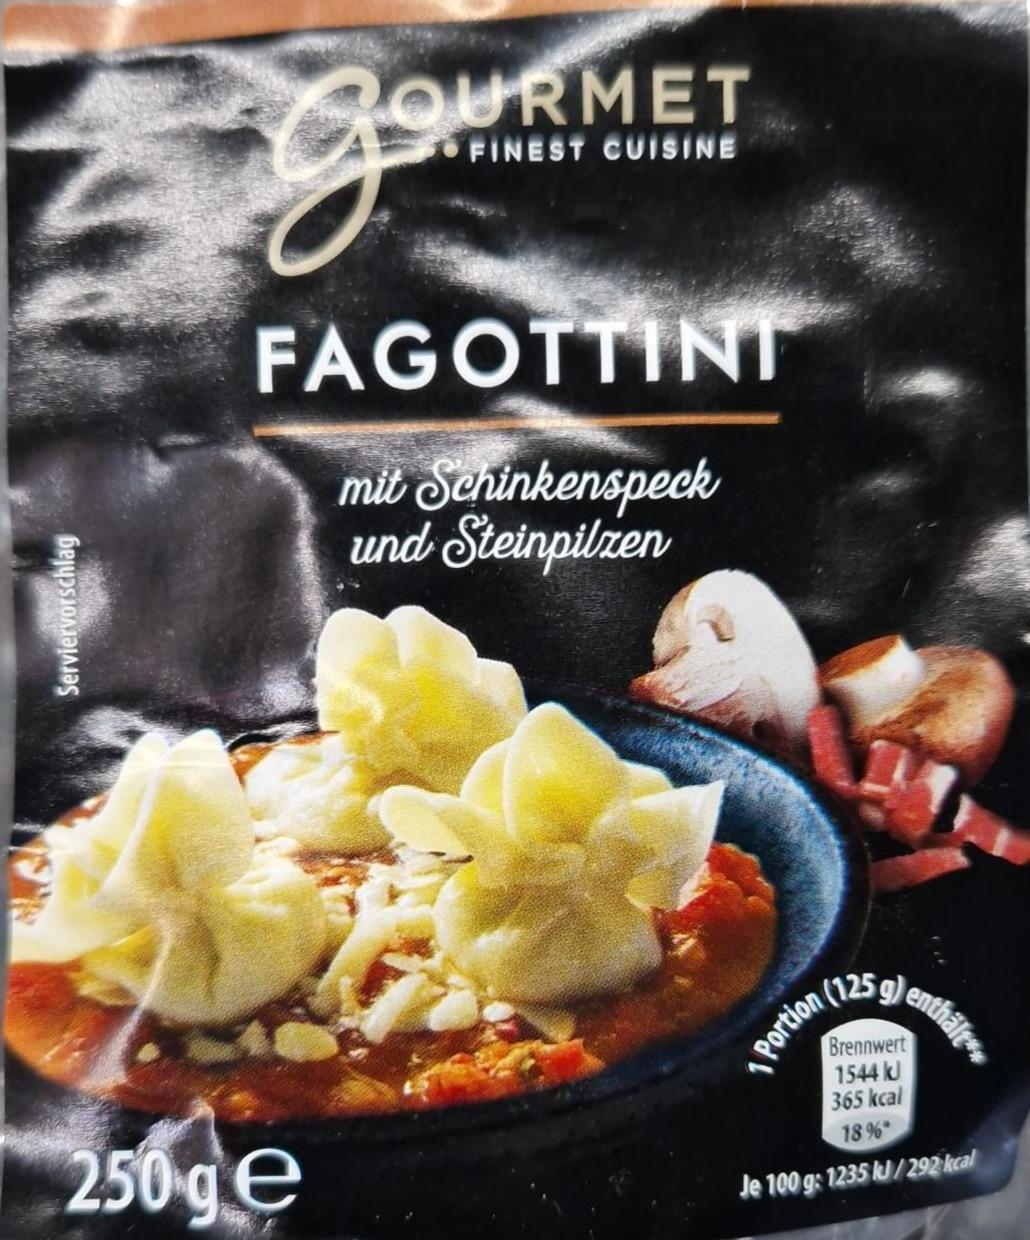 Fotografie - Fagottini mit Schinkenspeck und Steinpilzen Gourmet finest cuisine